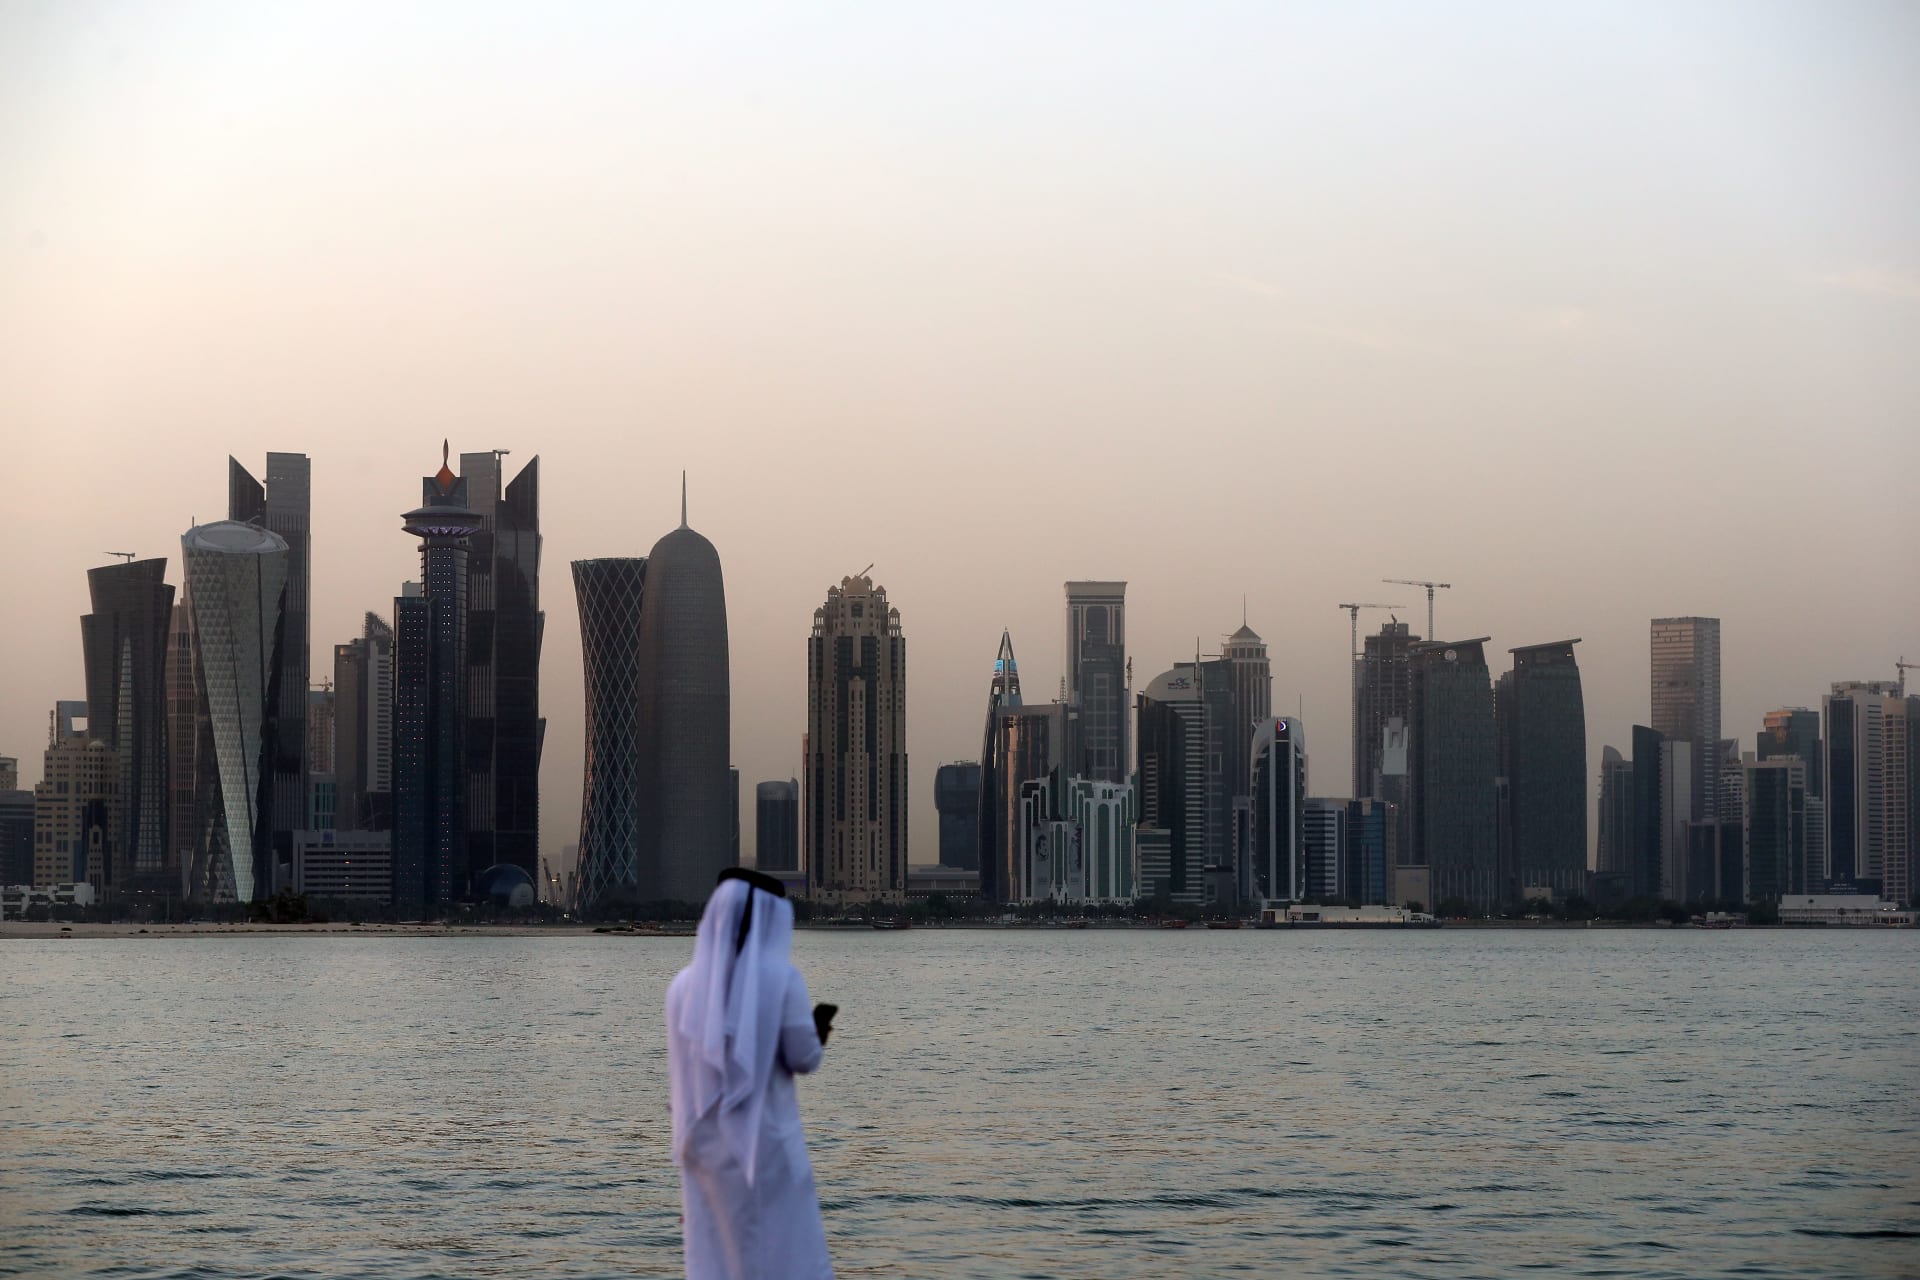 جامعة قطر تعلق فعالية فرنسية إلى أجل غير مسمى ردًا على "الإساءة المُتعمدة للإسلام"